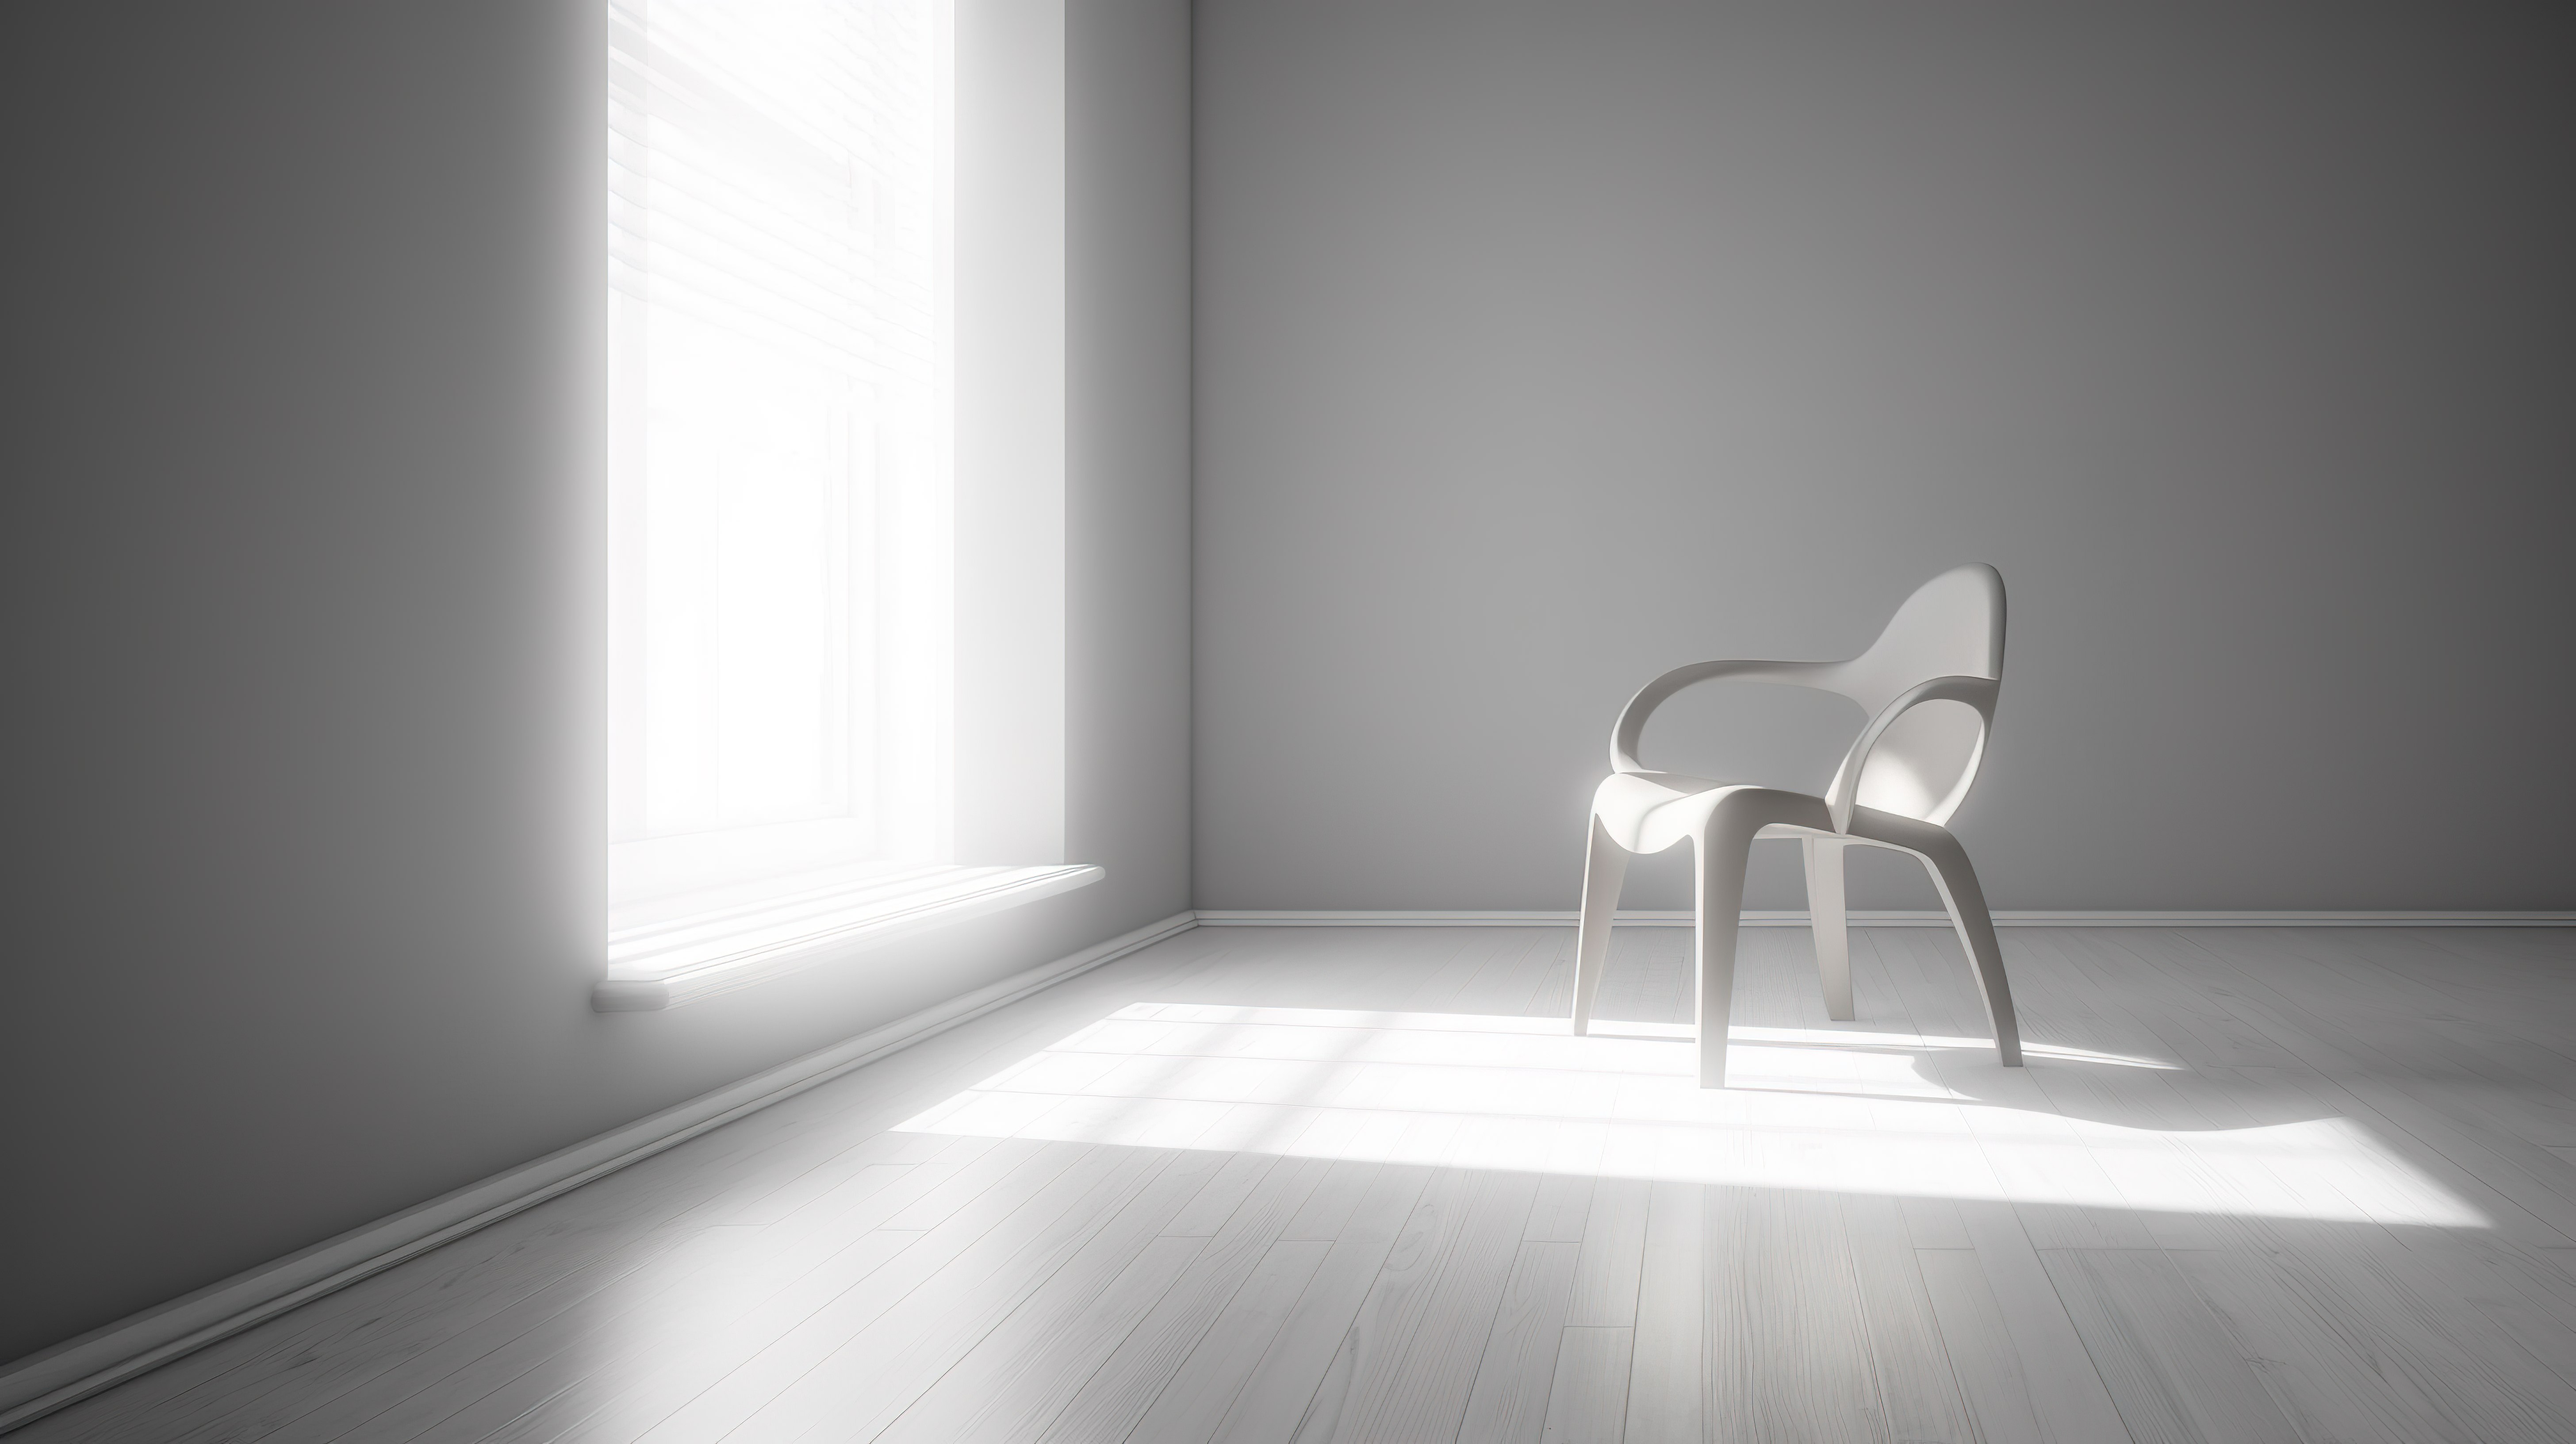 3d 中的孤独是一个抽象的抑郁概念，在空荡荡的室内房间里有一把孤独的椅子图片